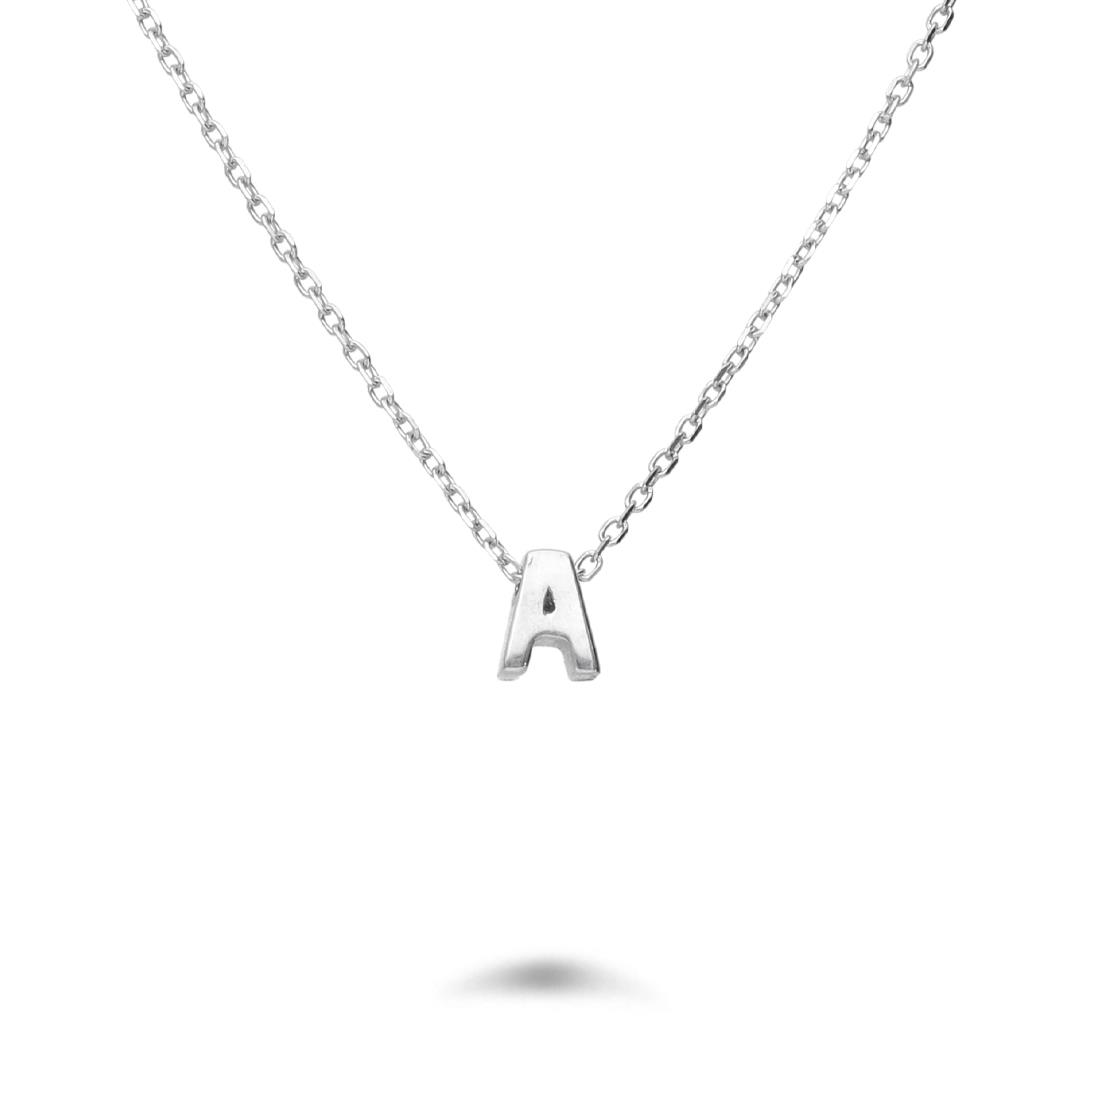 Rolò necklace in rhodium-plated silver with letter A - DESIDERI PREZIOSI